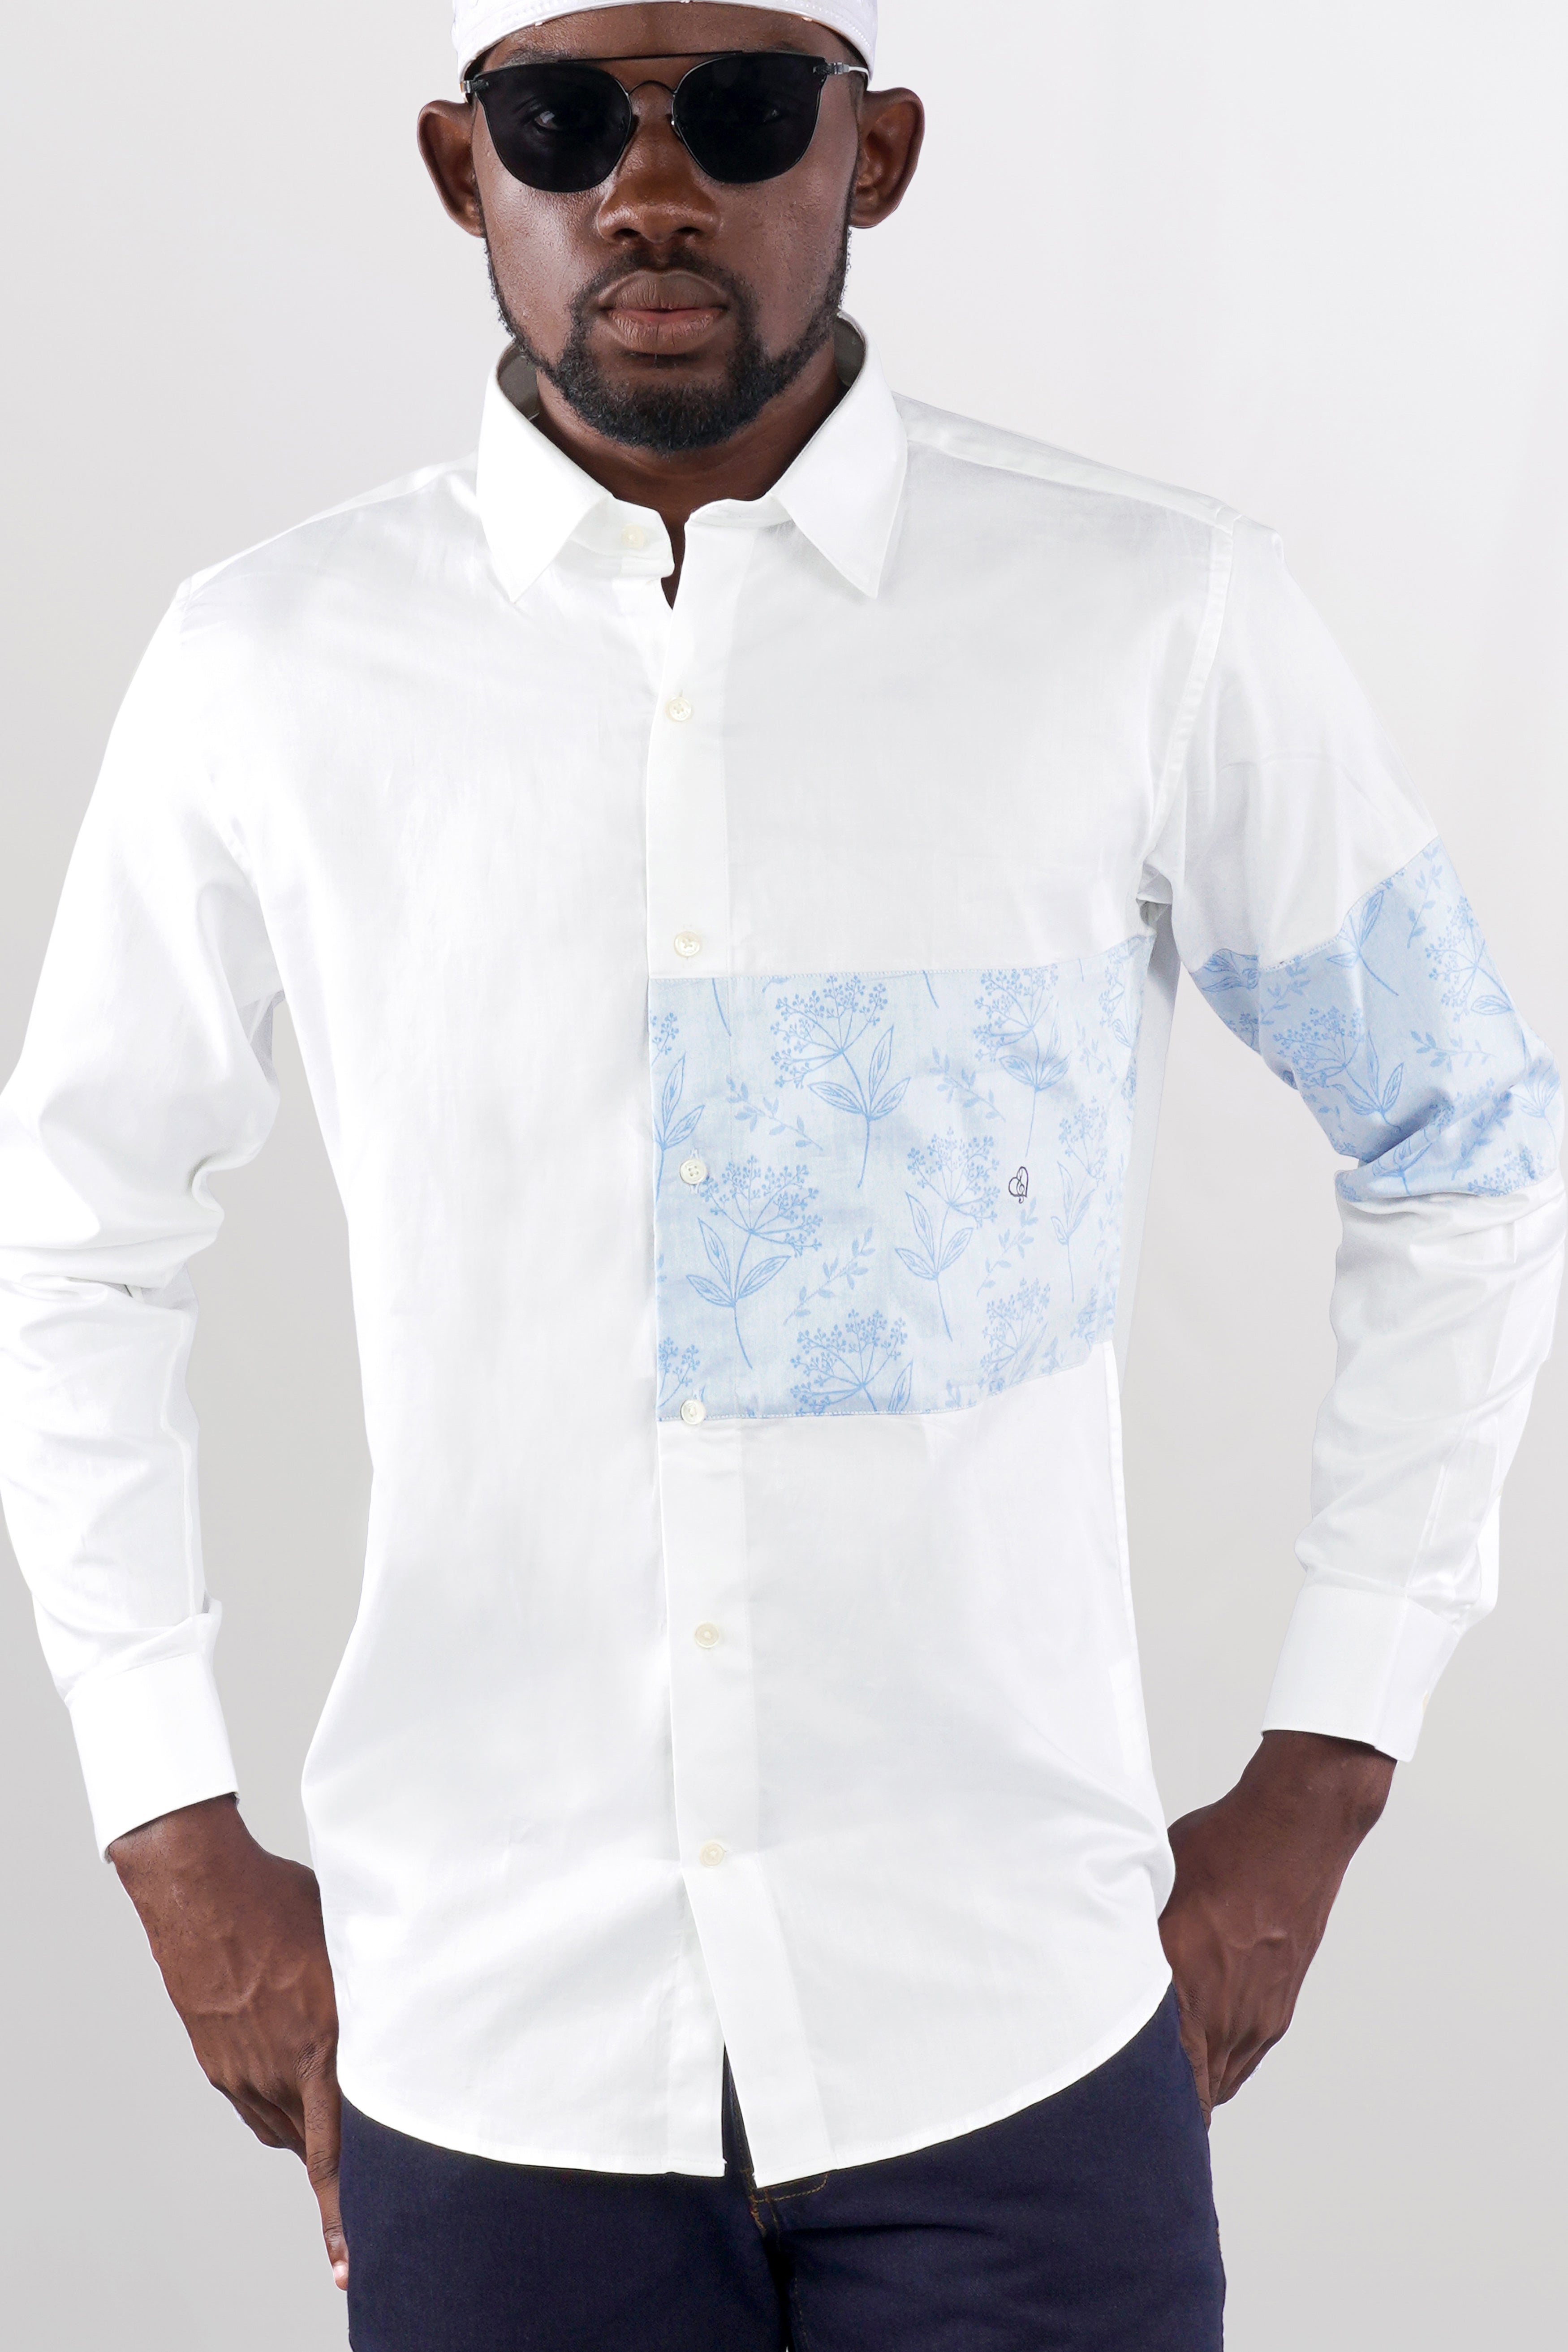 Bright White Jacquard Textured Premium Giza Cotton Designer Shirt